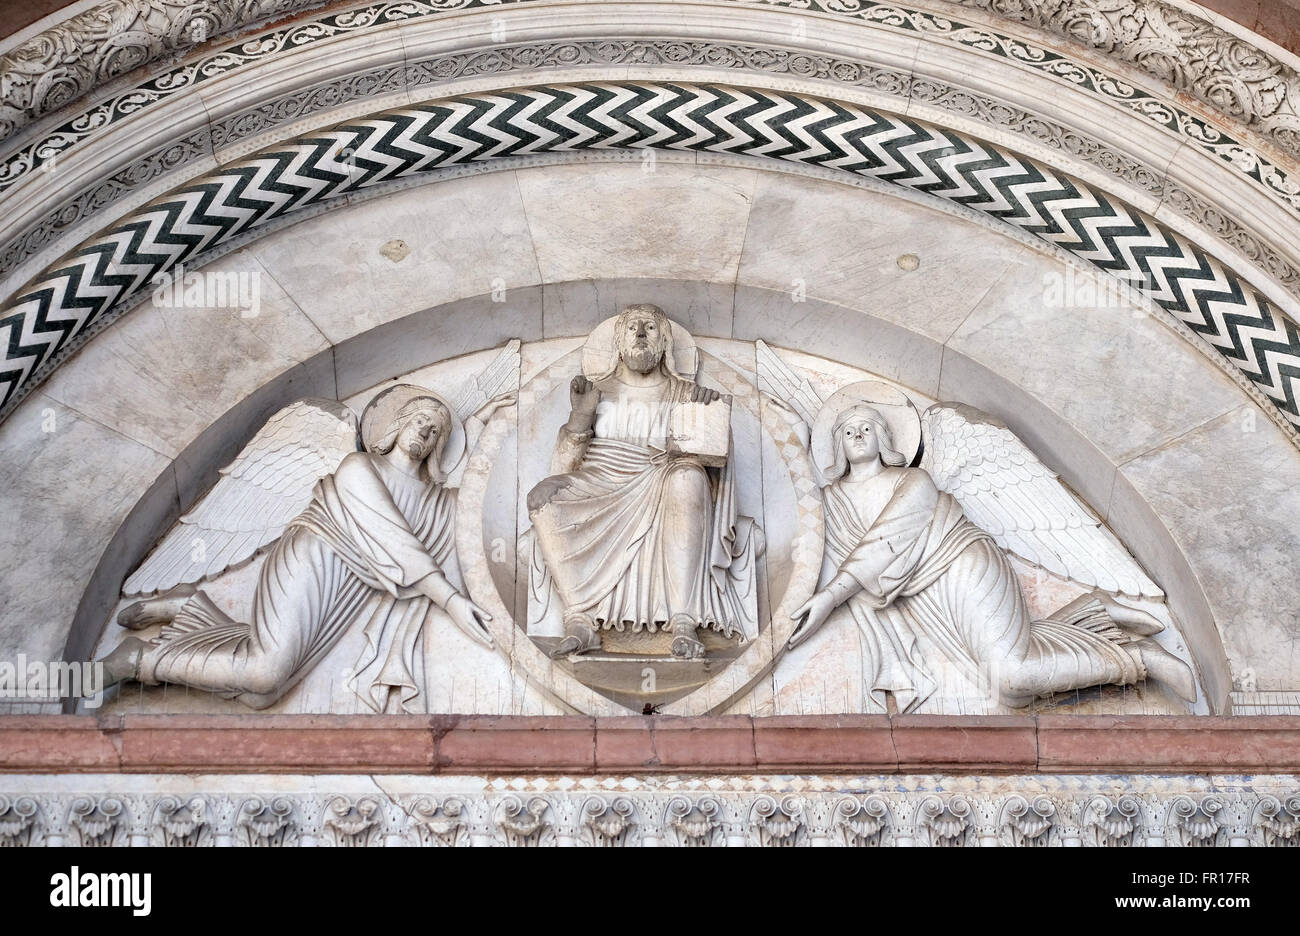 Das zentrale Portal der Kathedrale von St. Martin in Lucca. Lünette zeigt den Erlöser und zwei Engeln, Lucca, Italien Stockfoto